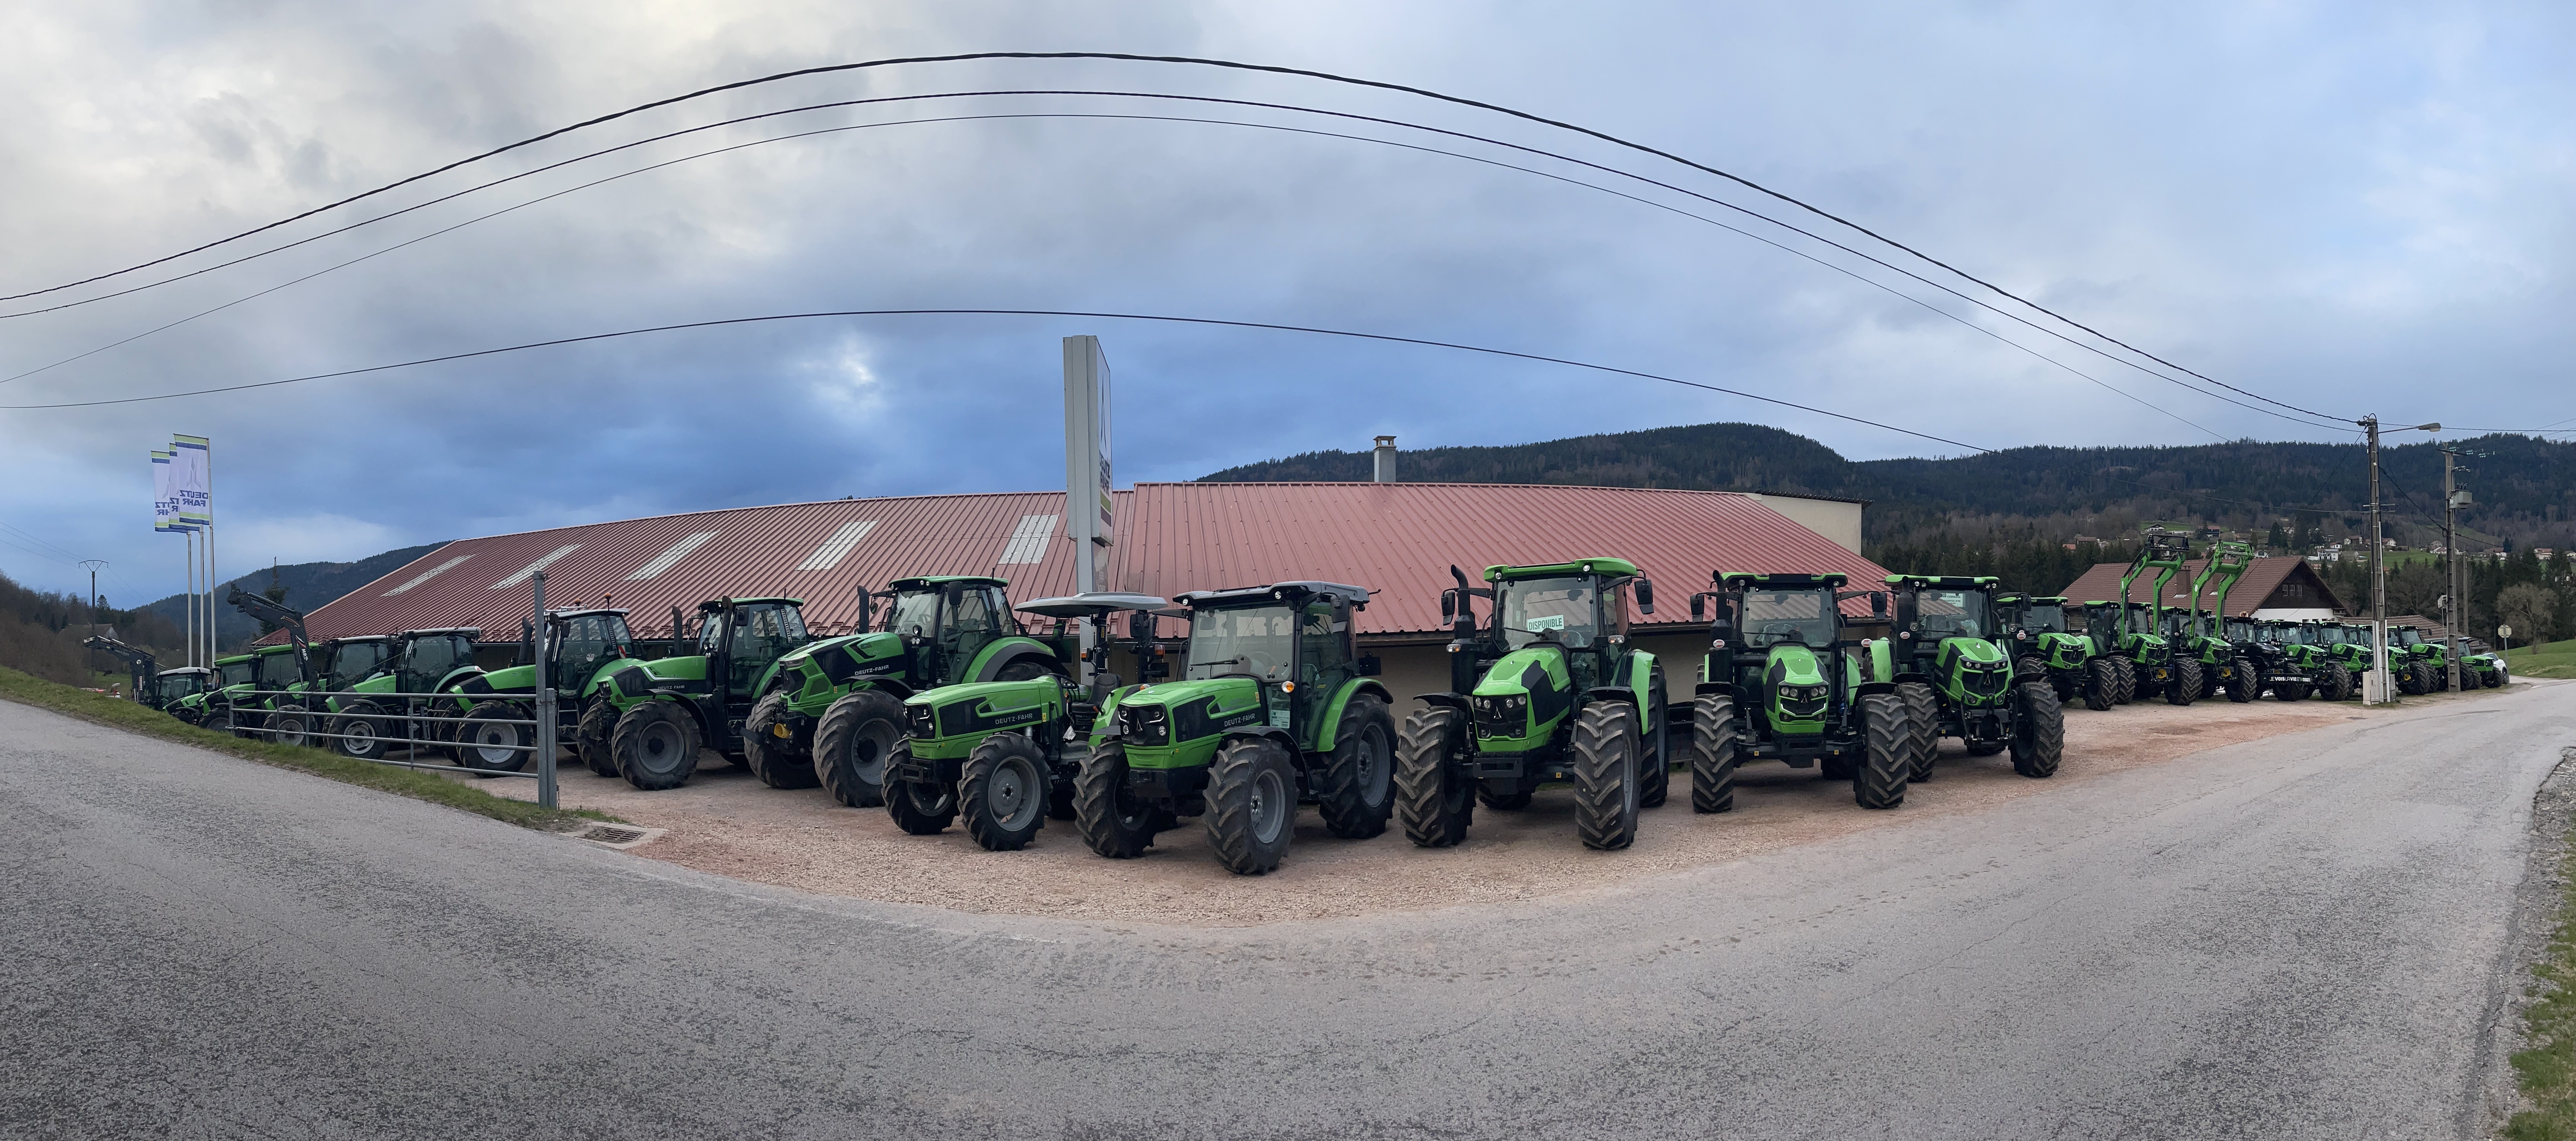 24 tracteurs Deutz-Fahr étaient exposés à l’occasion des journées déstockage de la concession ©Martin HVA